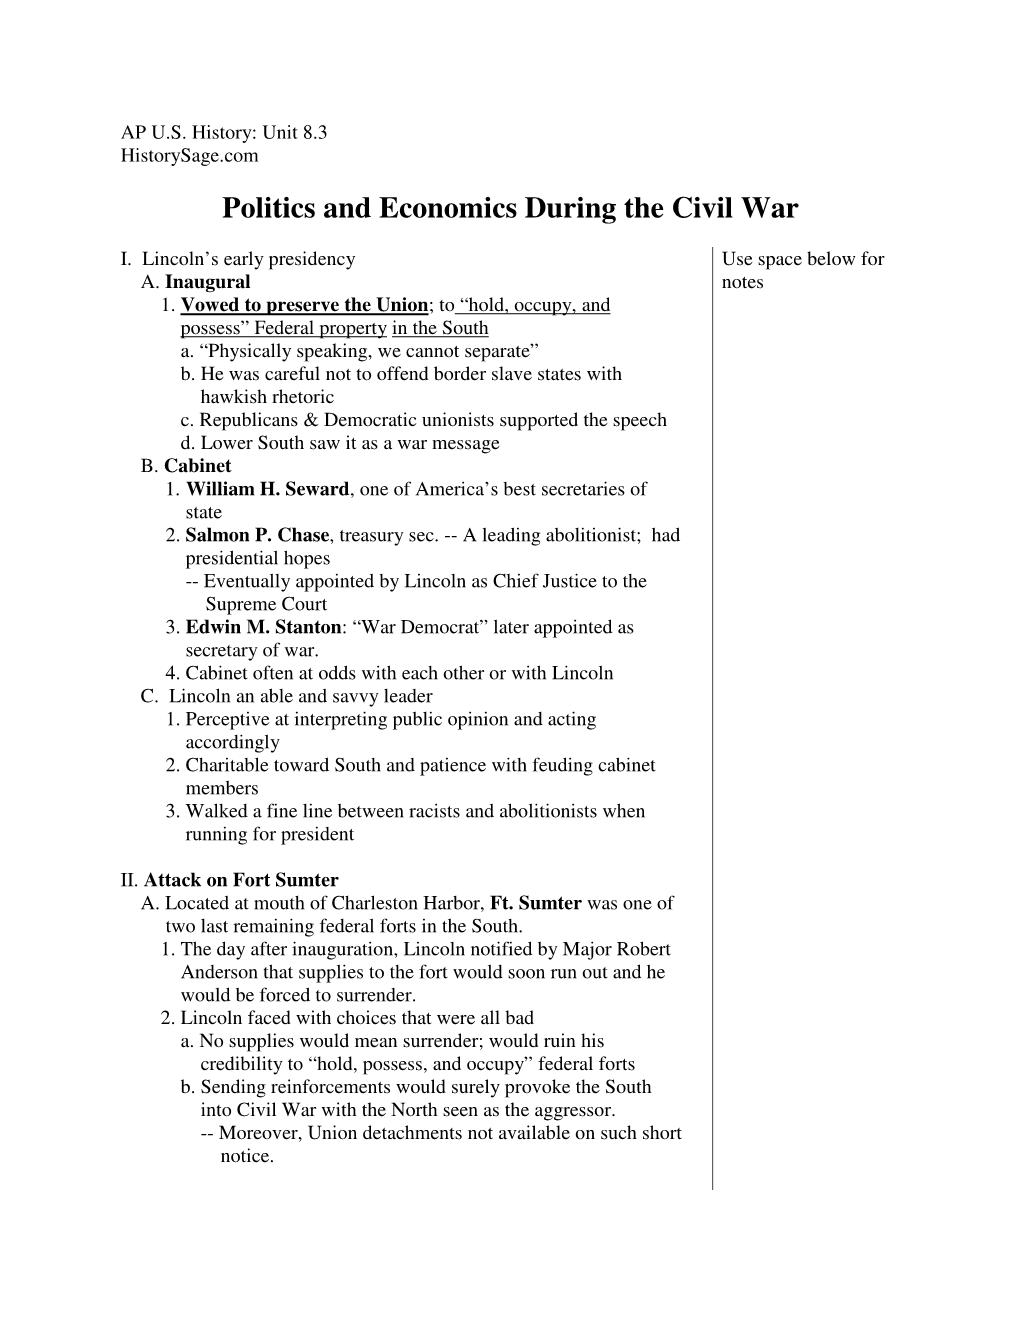 Politics and Economics During the Civil War